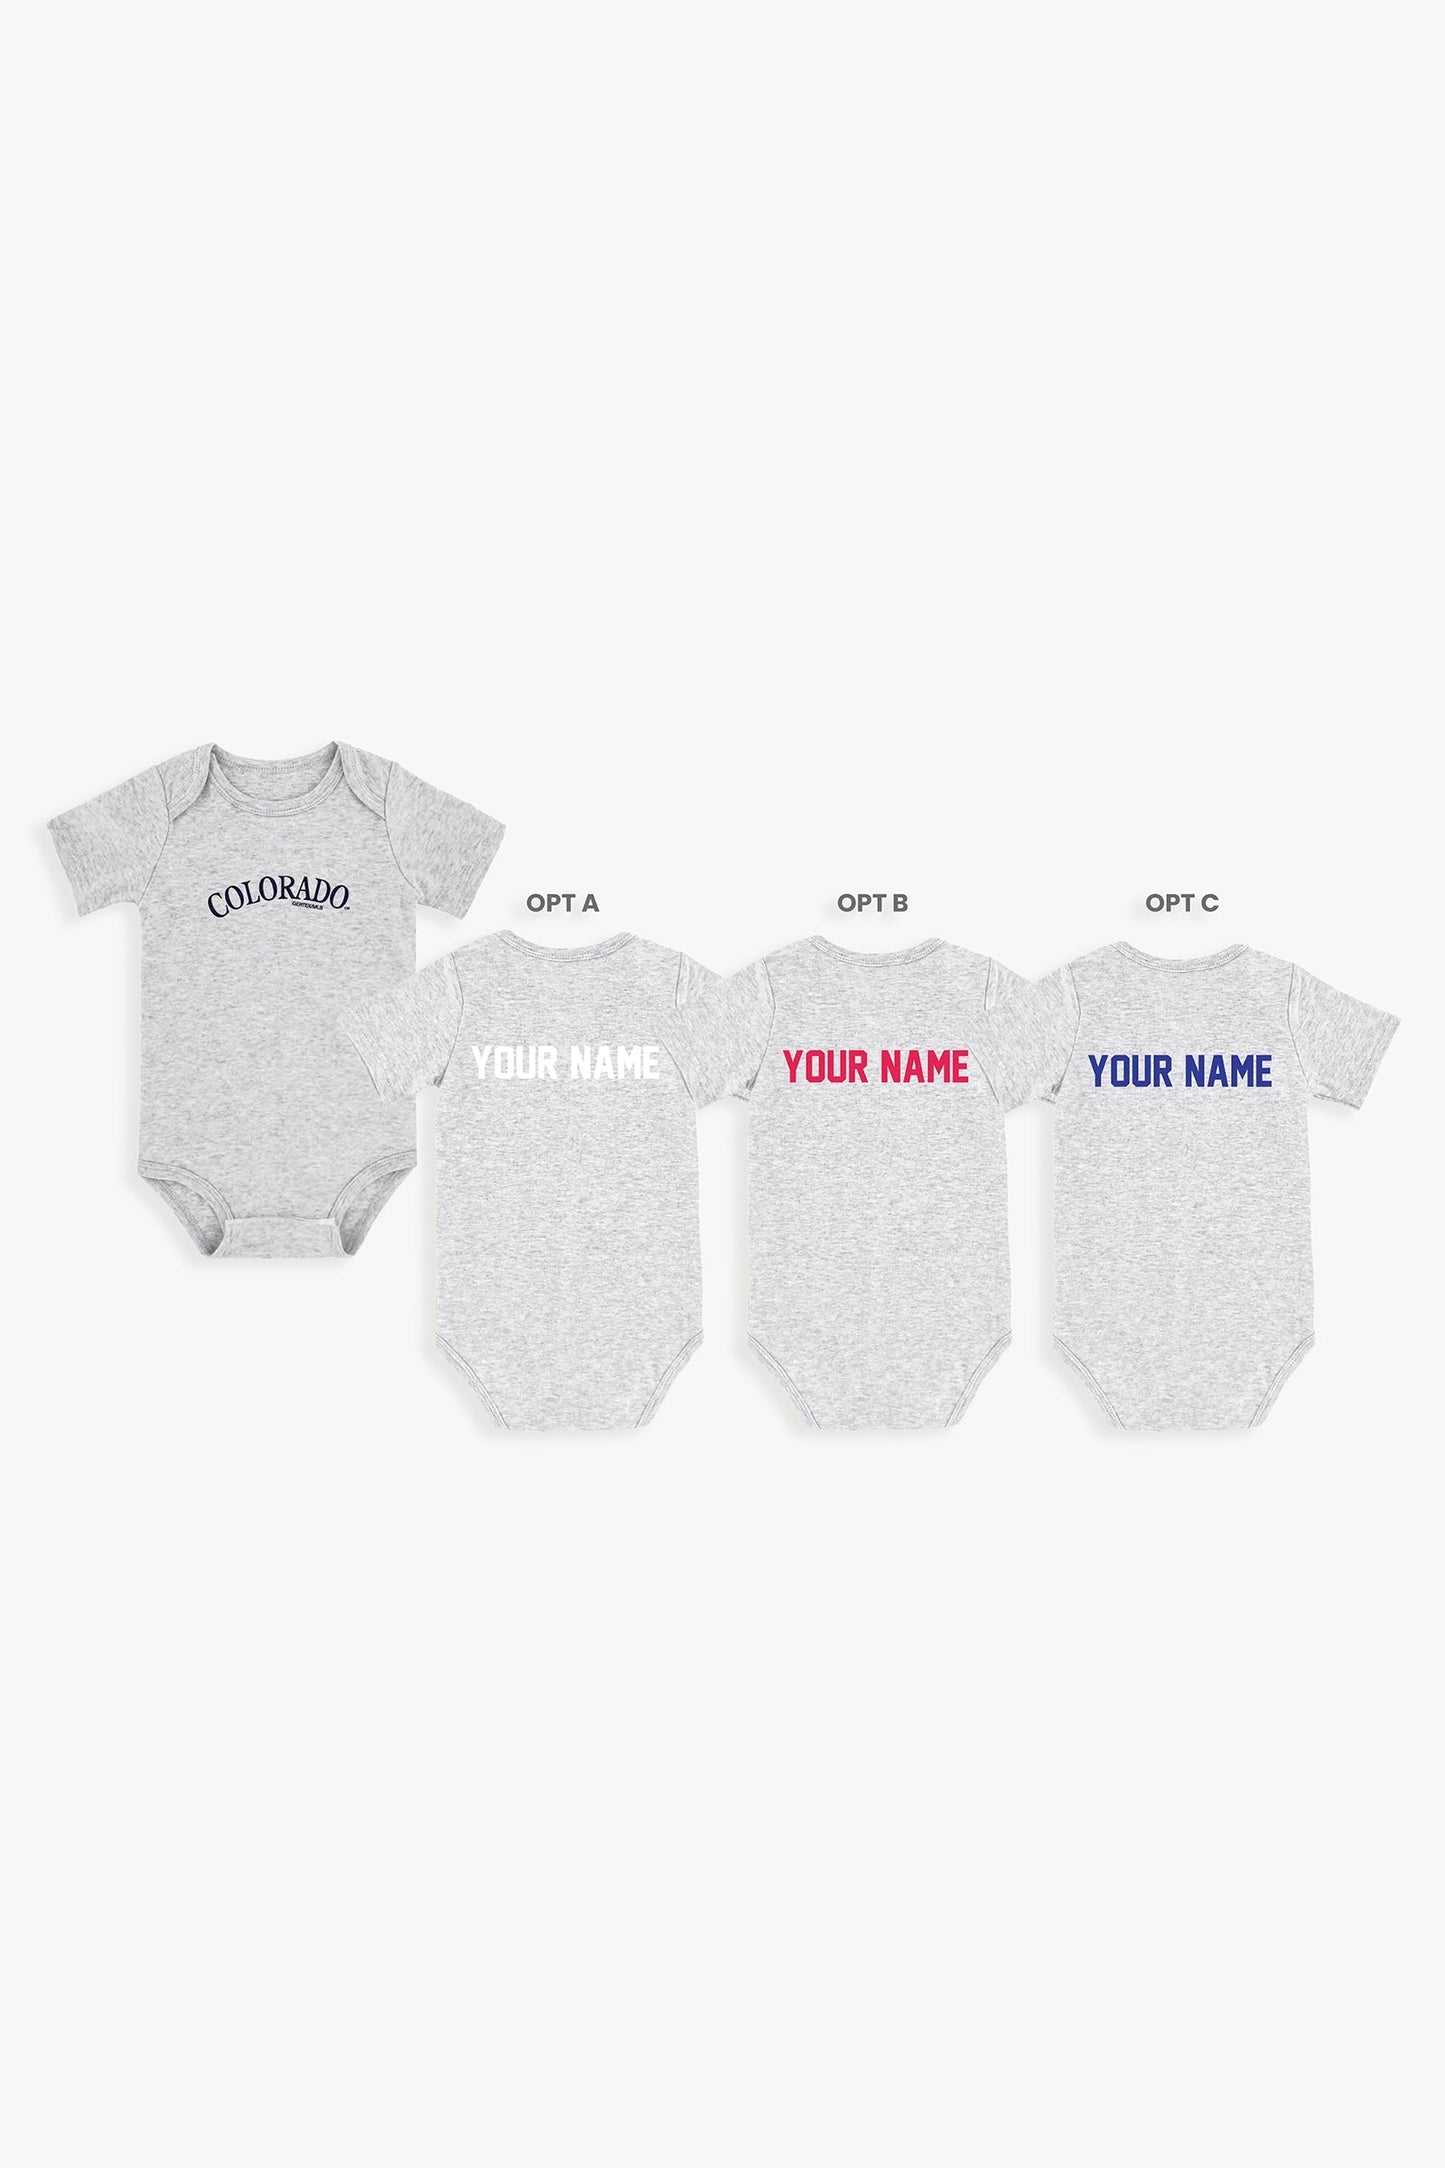 Customizable MLB Baby Onesie Bodysuit in Grey (12-18 Months)